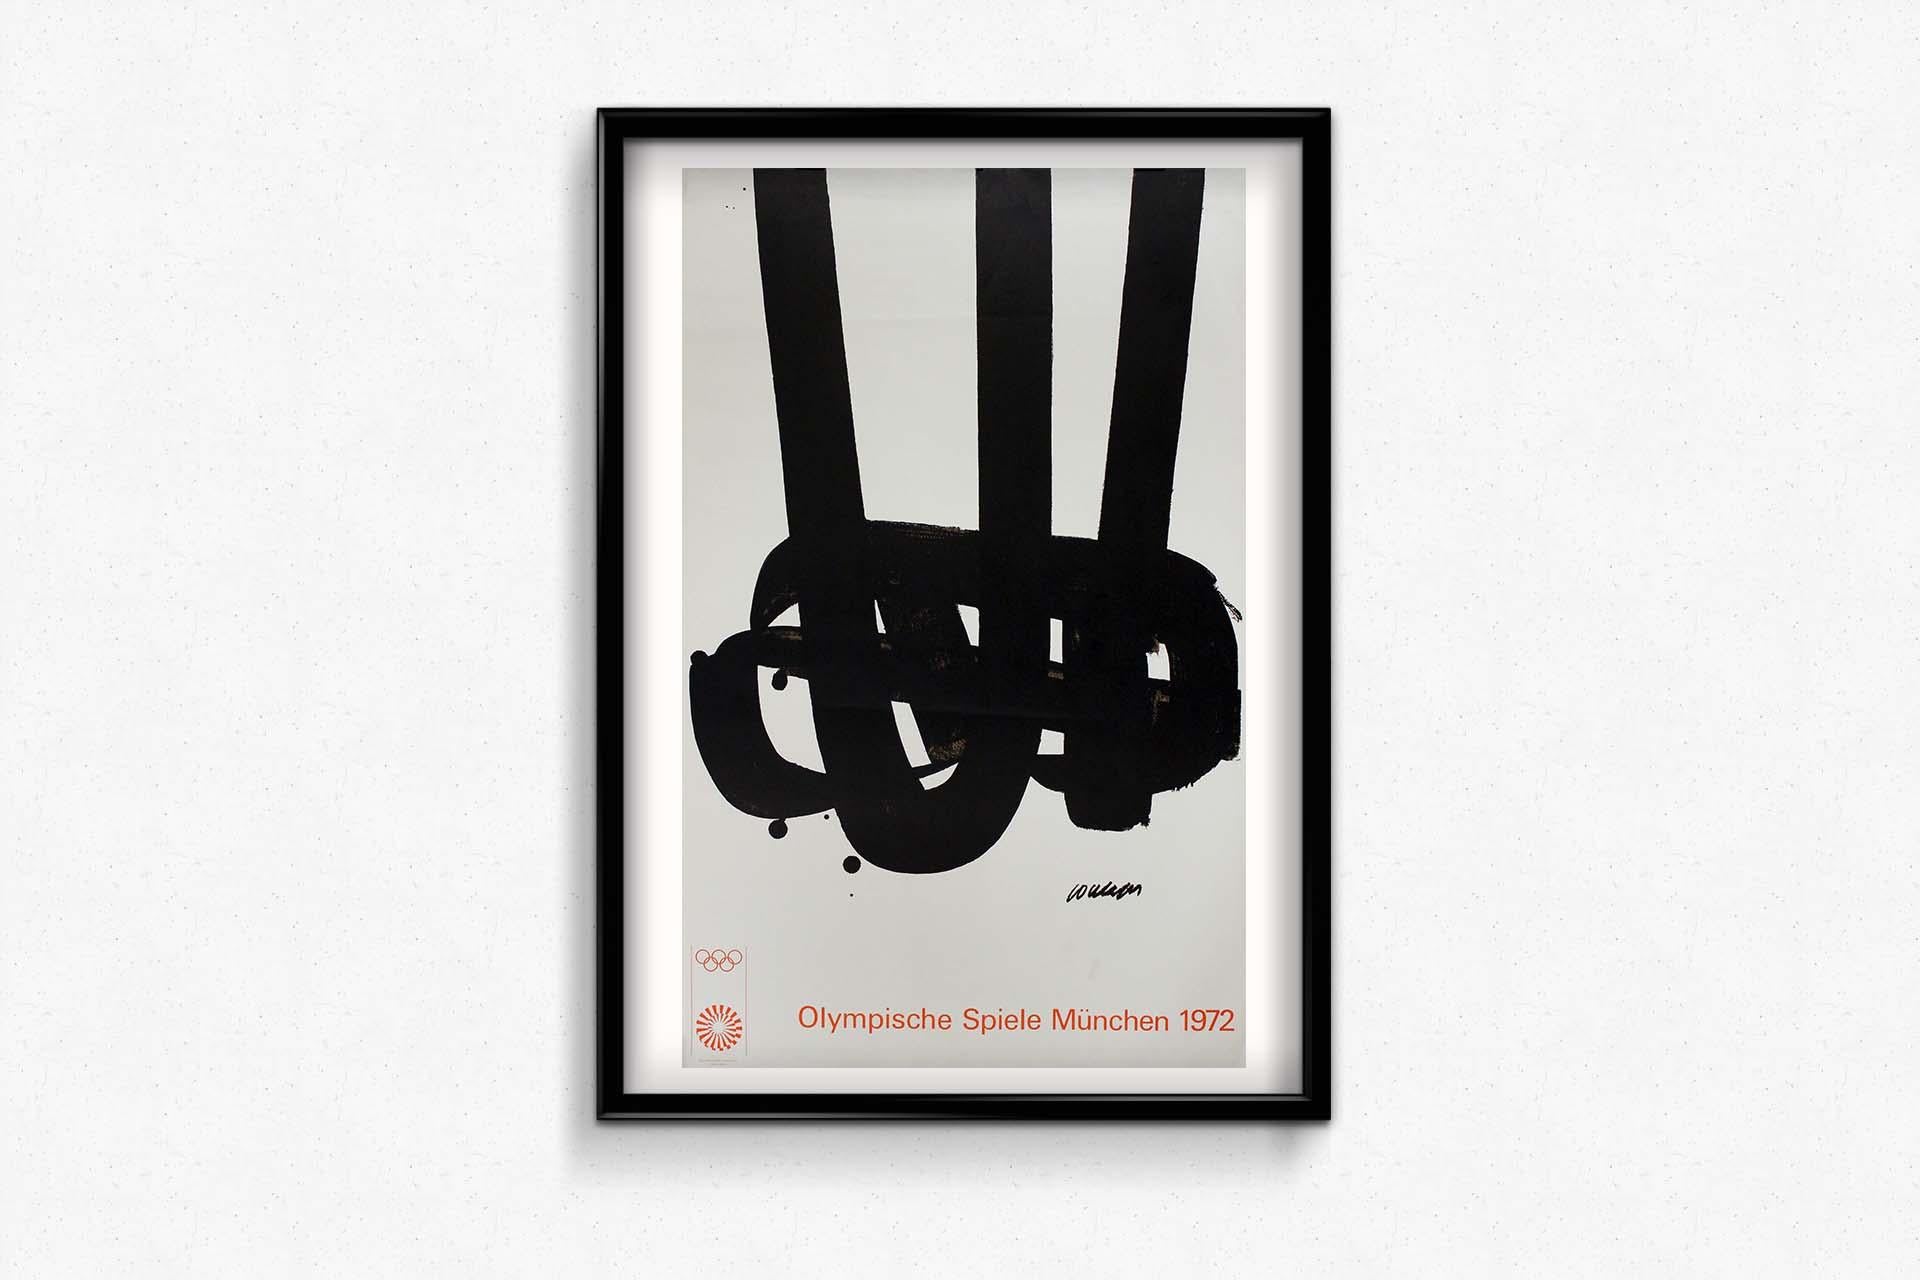 L'affiche des Jeux olympiques de Munich de 1972 de Pierre Soulages est un chef-d'œuvre visuel qui offre une perspective unique et monochrome sur l'esprit de l'excellence sportive. Cette affiche emblématique est un hommage aux Jeux Olympiques,